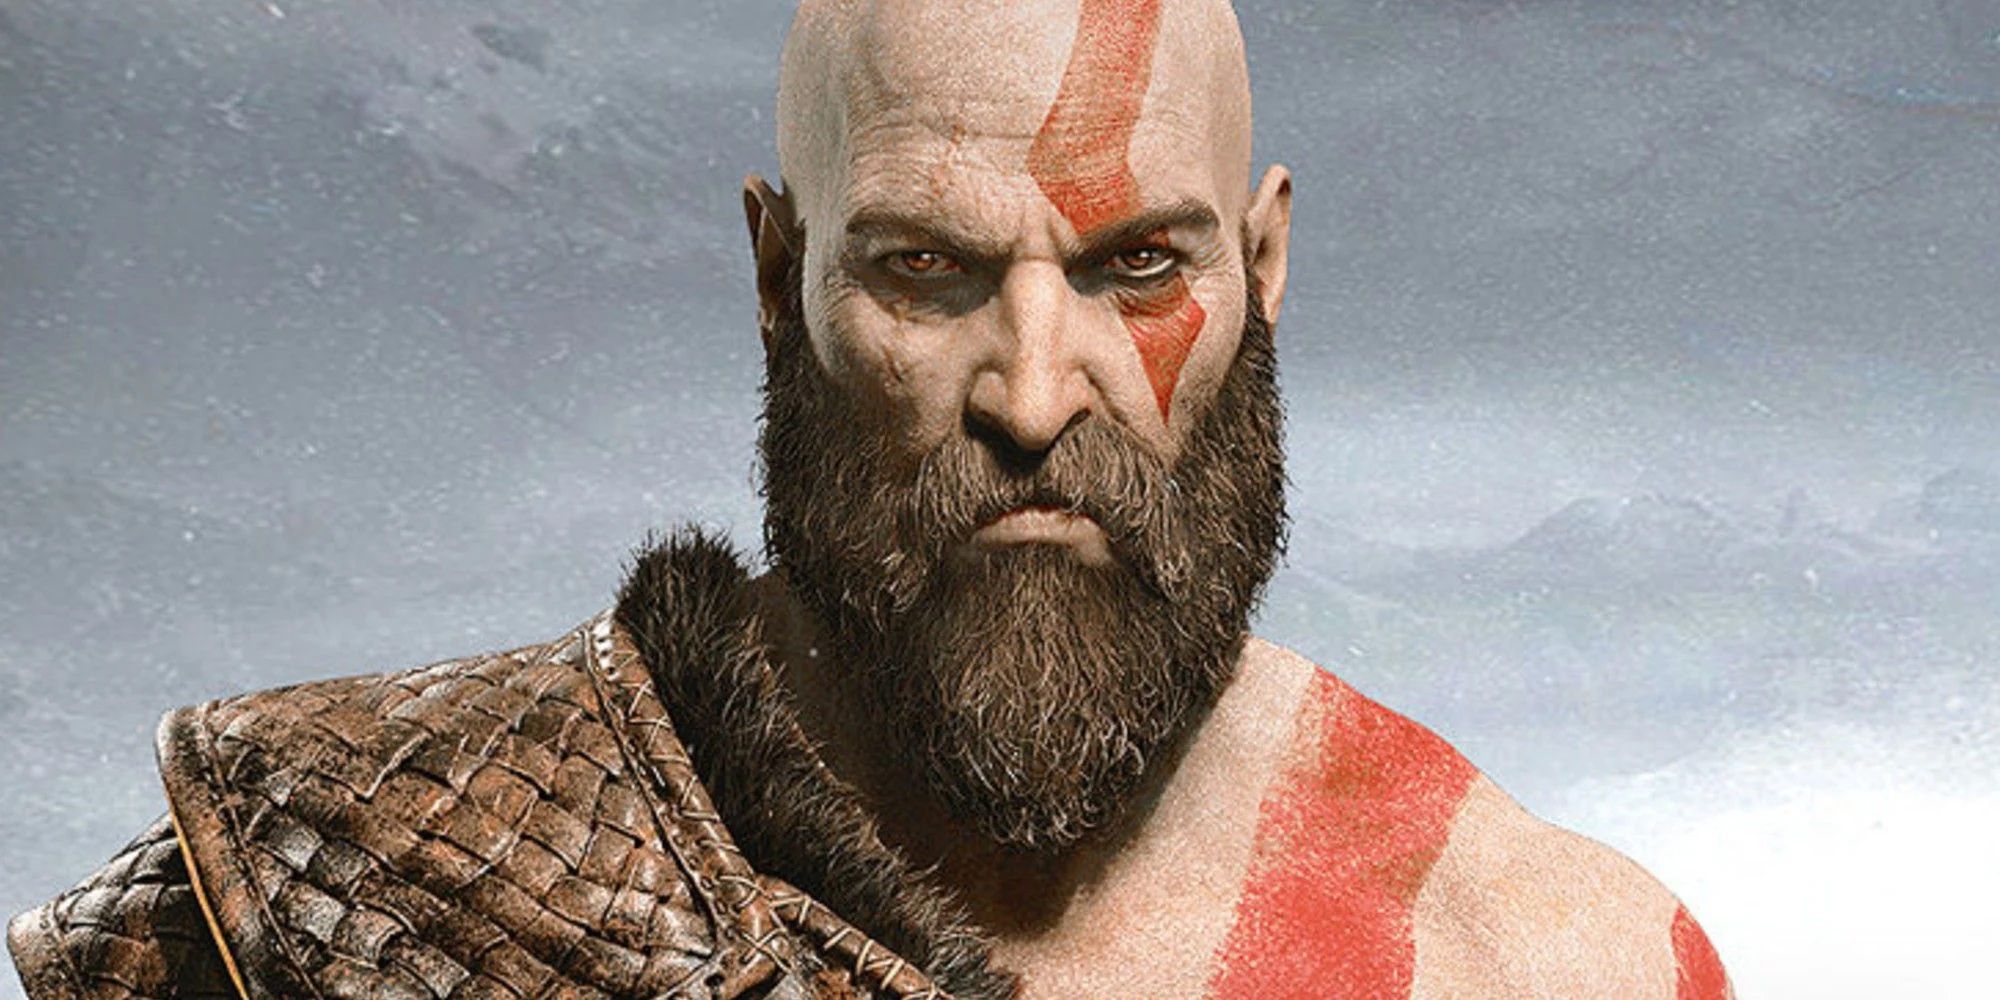 Kratos  God of War  Avatar 070  Anime  Avatar Collection 001  100   OpenSea